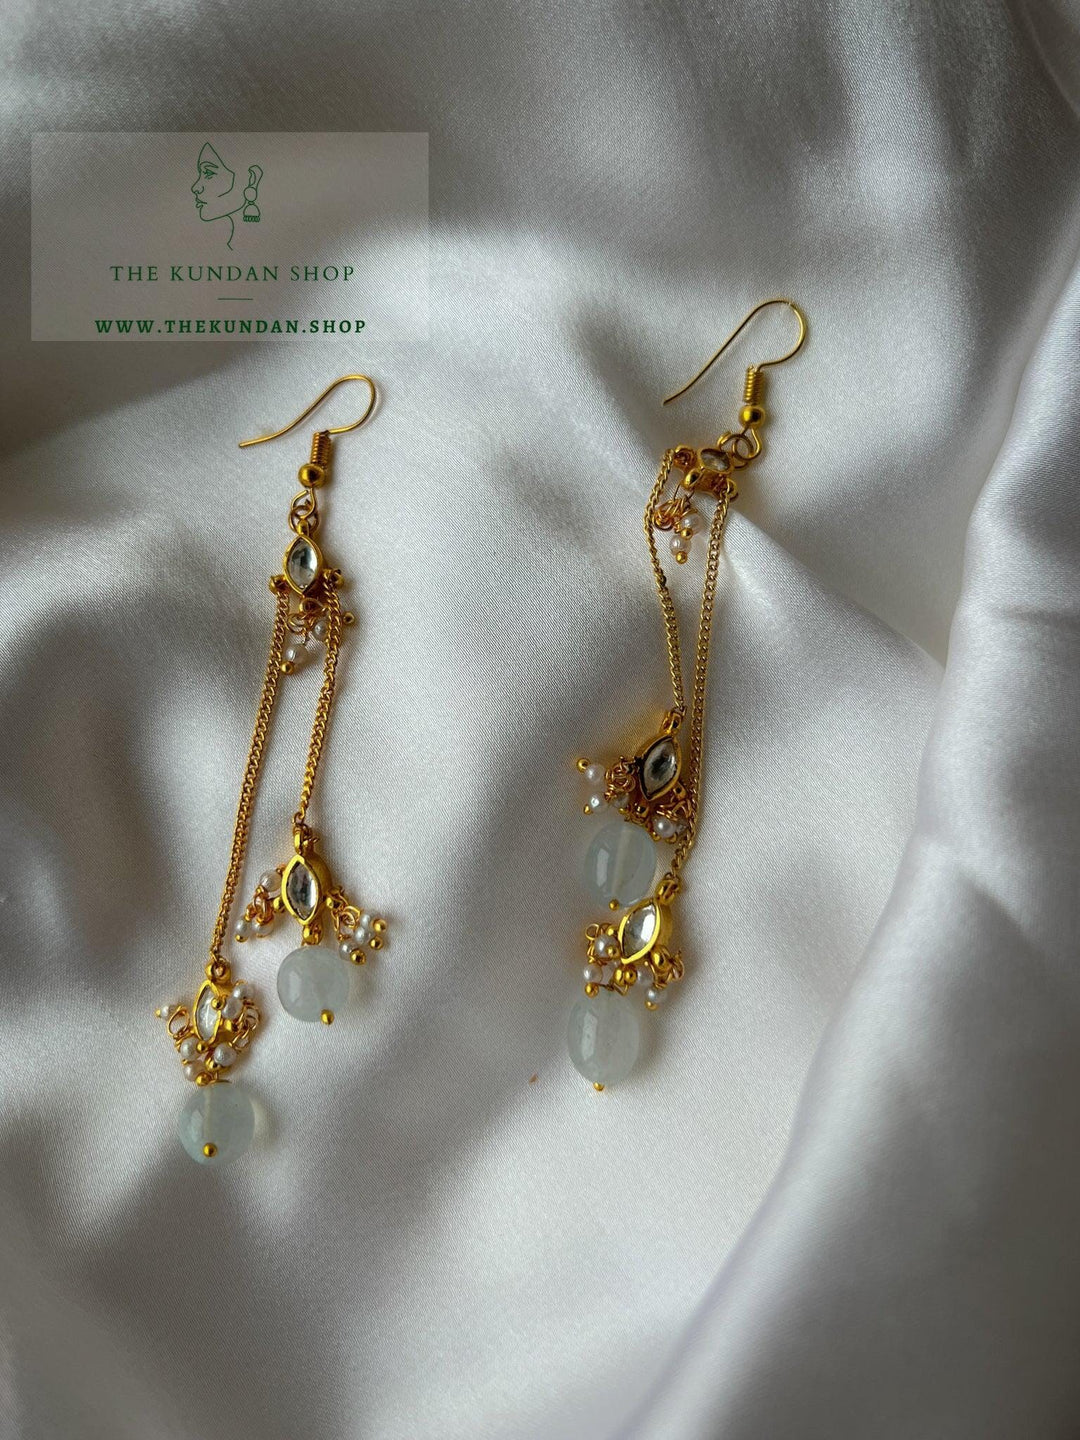 Chain Drops in Kundan Earrings Earrings THE KUNDAN SHOP Off White/Blue 